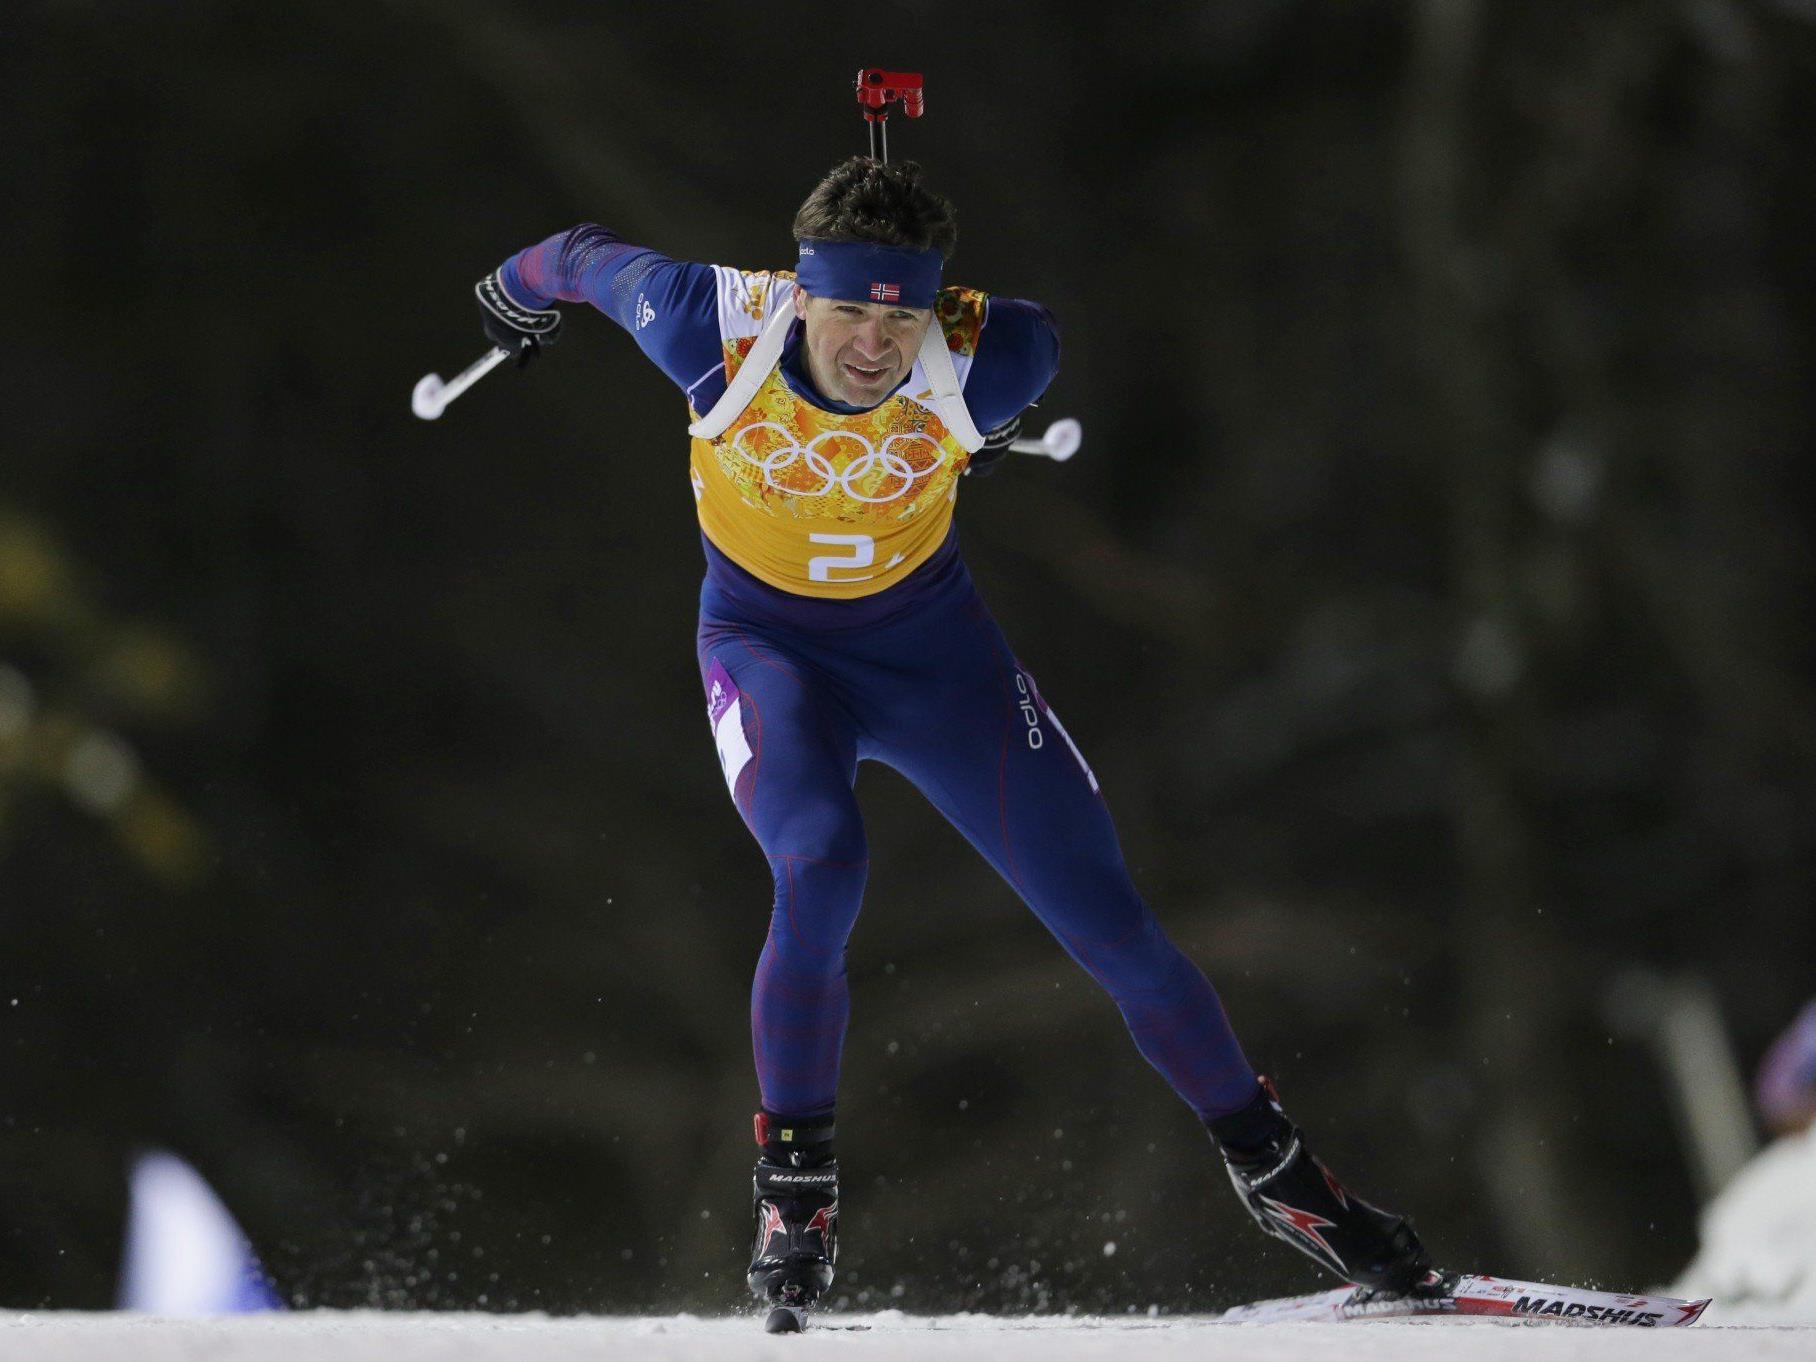 Björndalen nach achter Goldmedaille Nummer 1 der ewigen Bestenliste bei Winterspielen